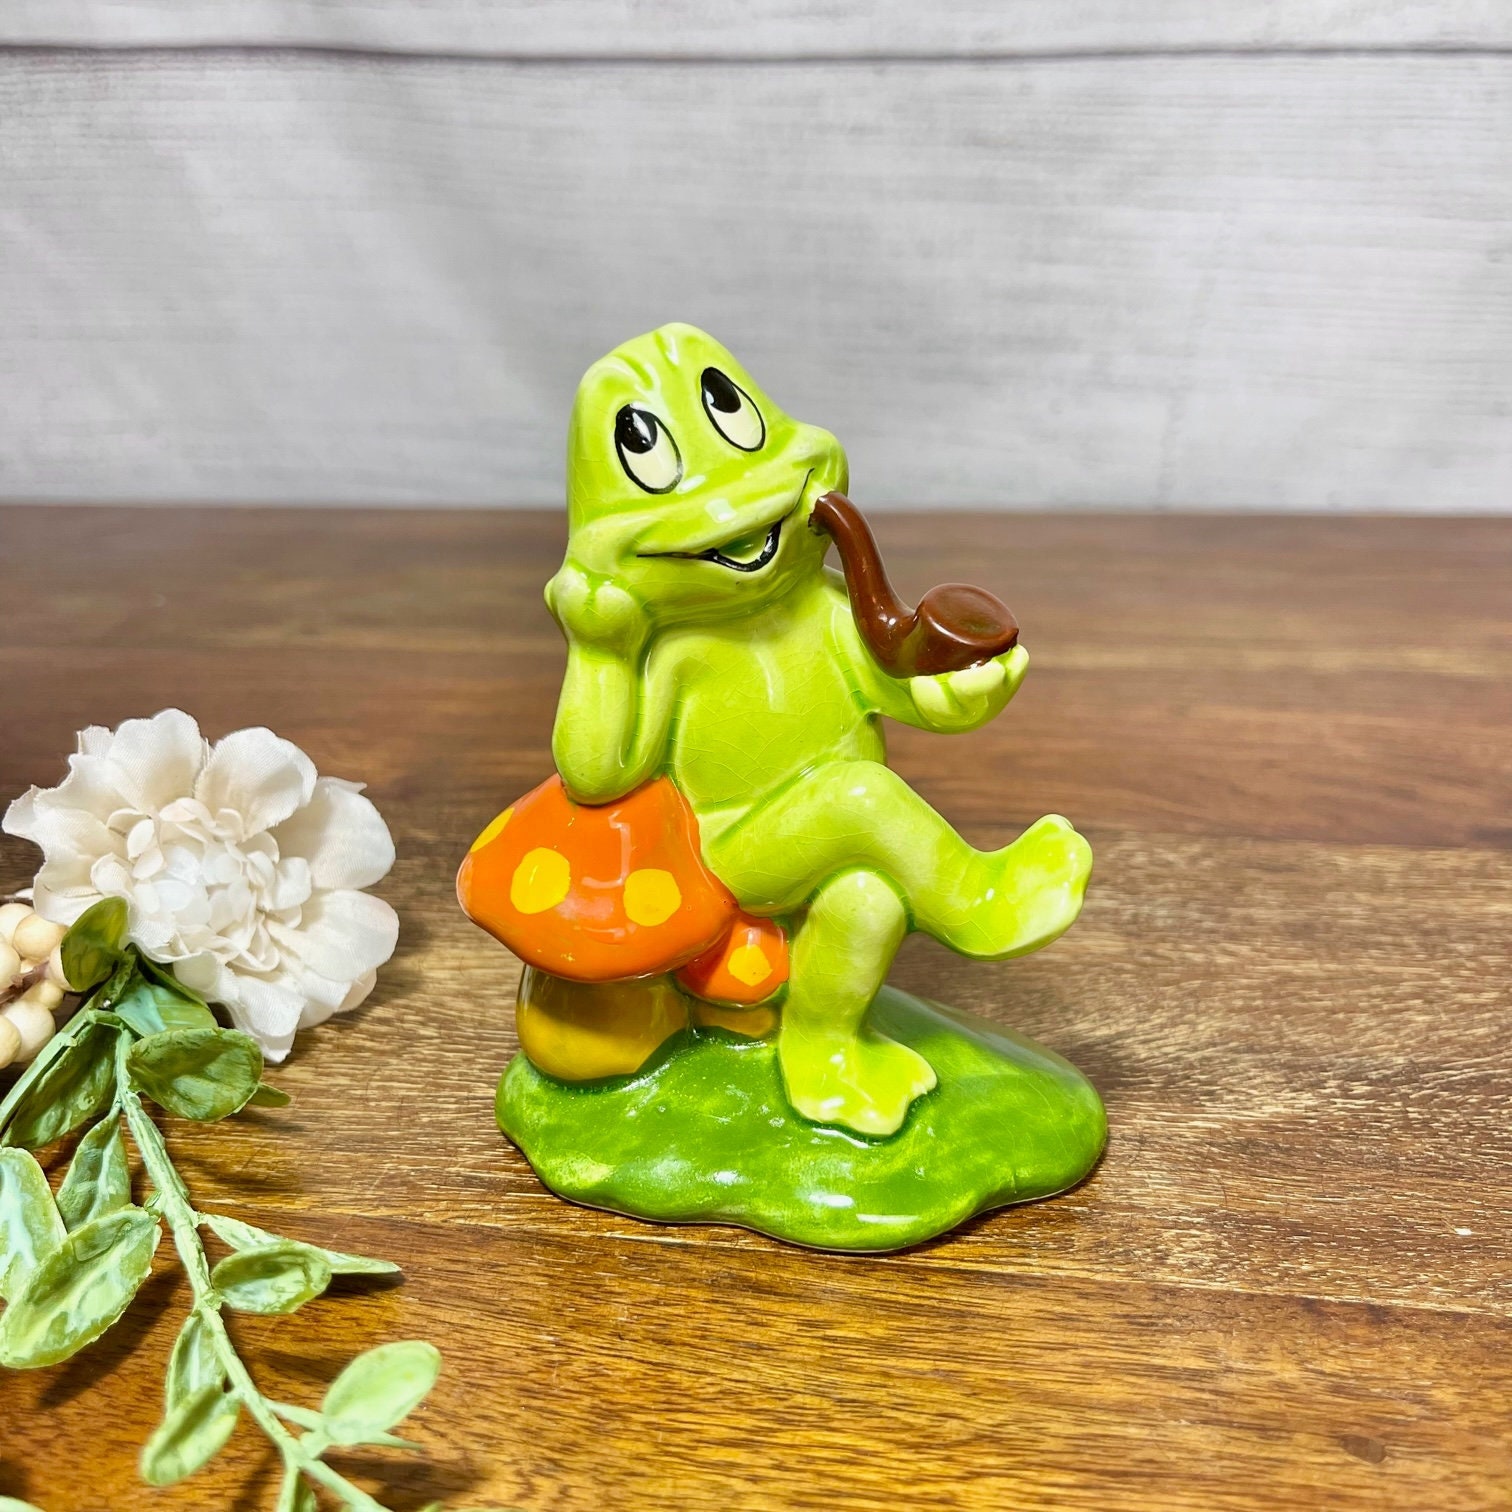 Adorable Vintage Lefton Sitting Frog Figurine 